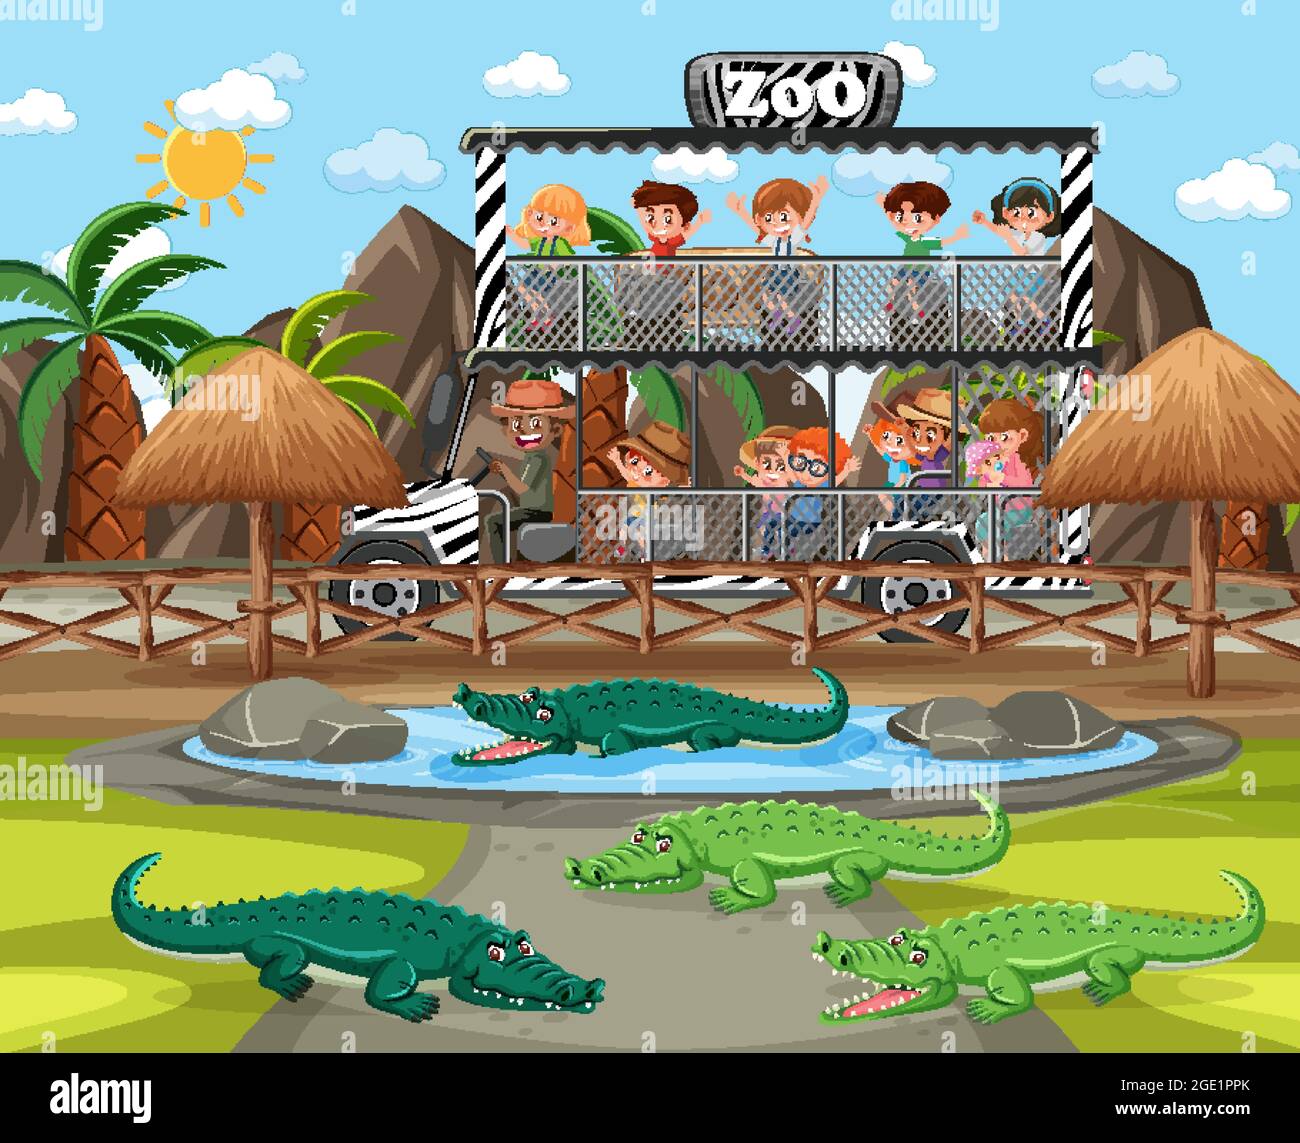 Safari scena con i bambini in auto turistica guardando l'illustrazione del gruppo degli alligatori Illustrazione Vettoriale